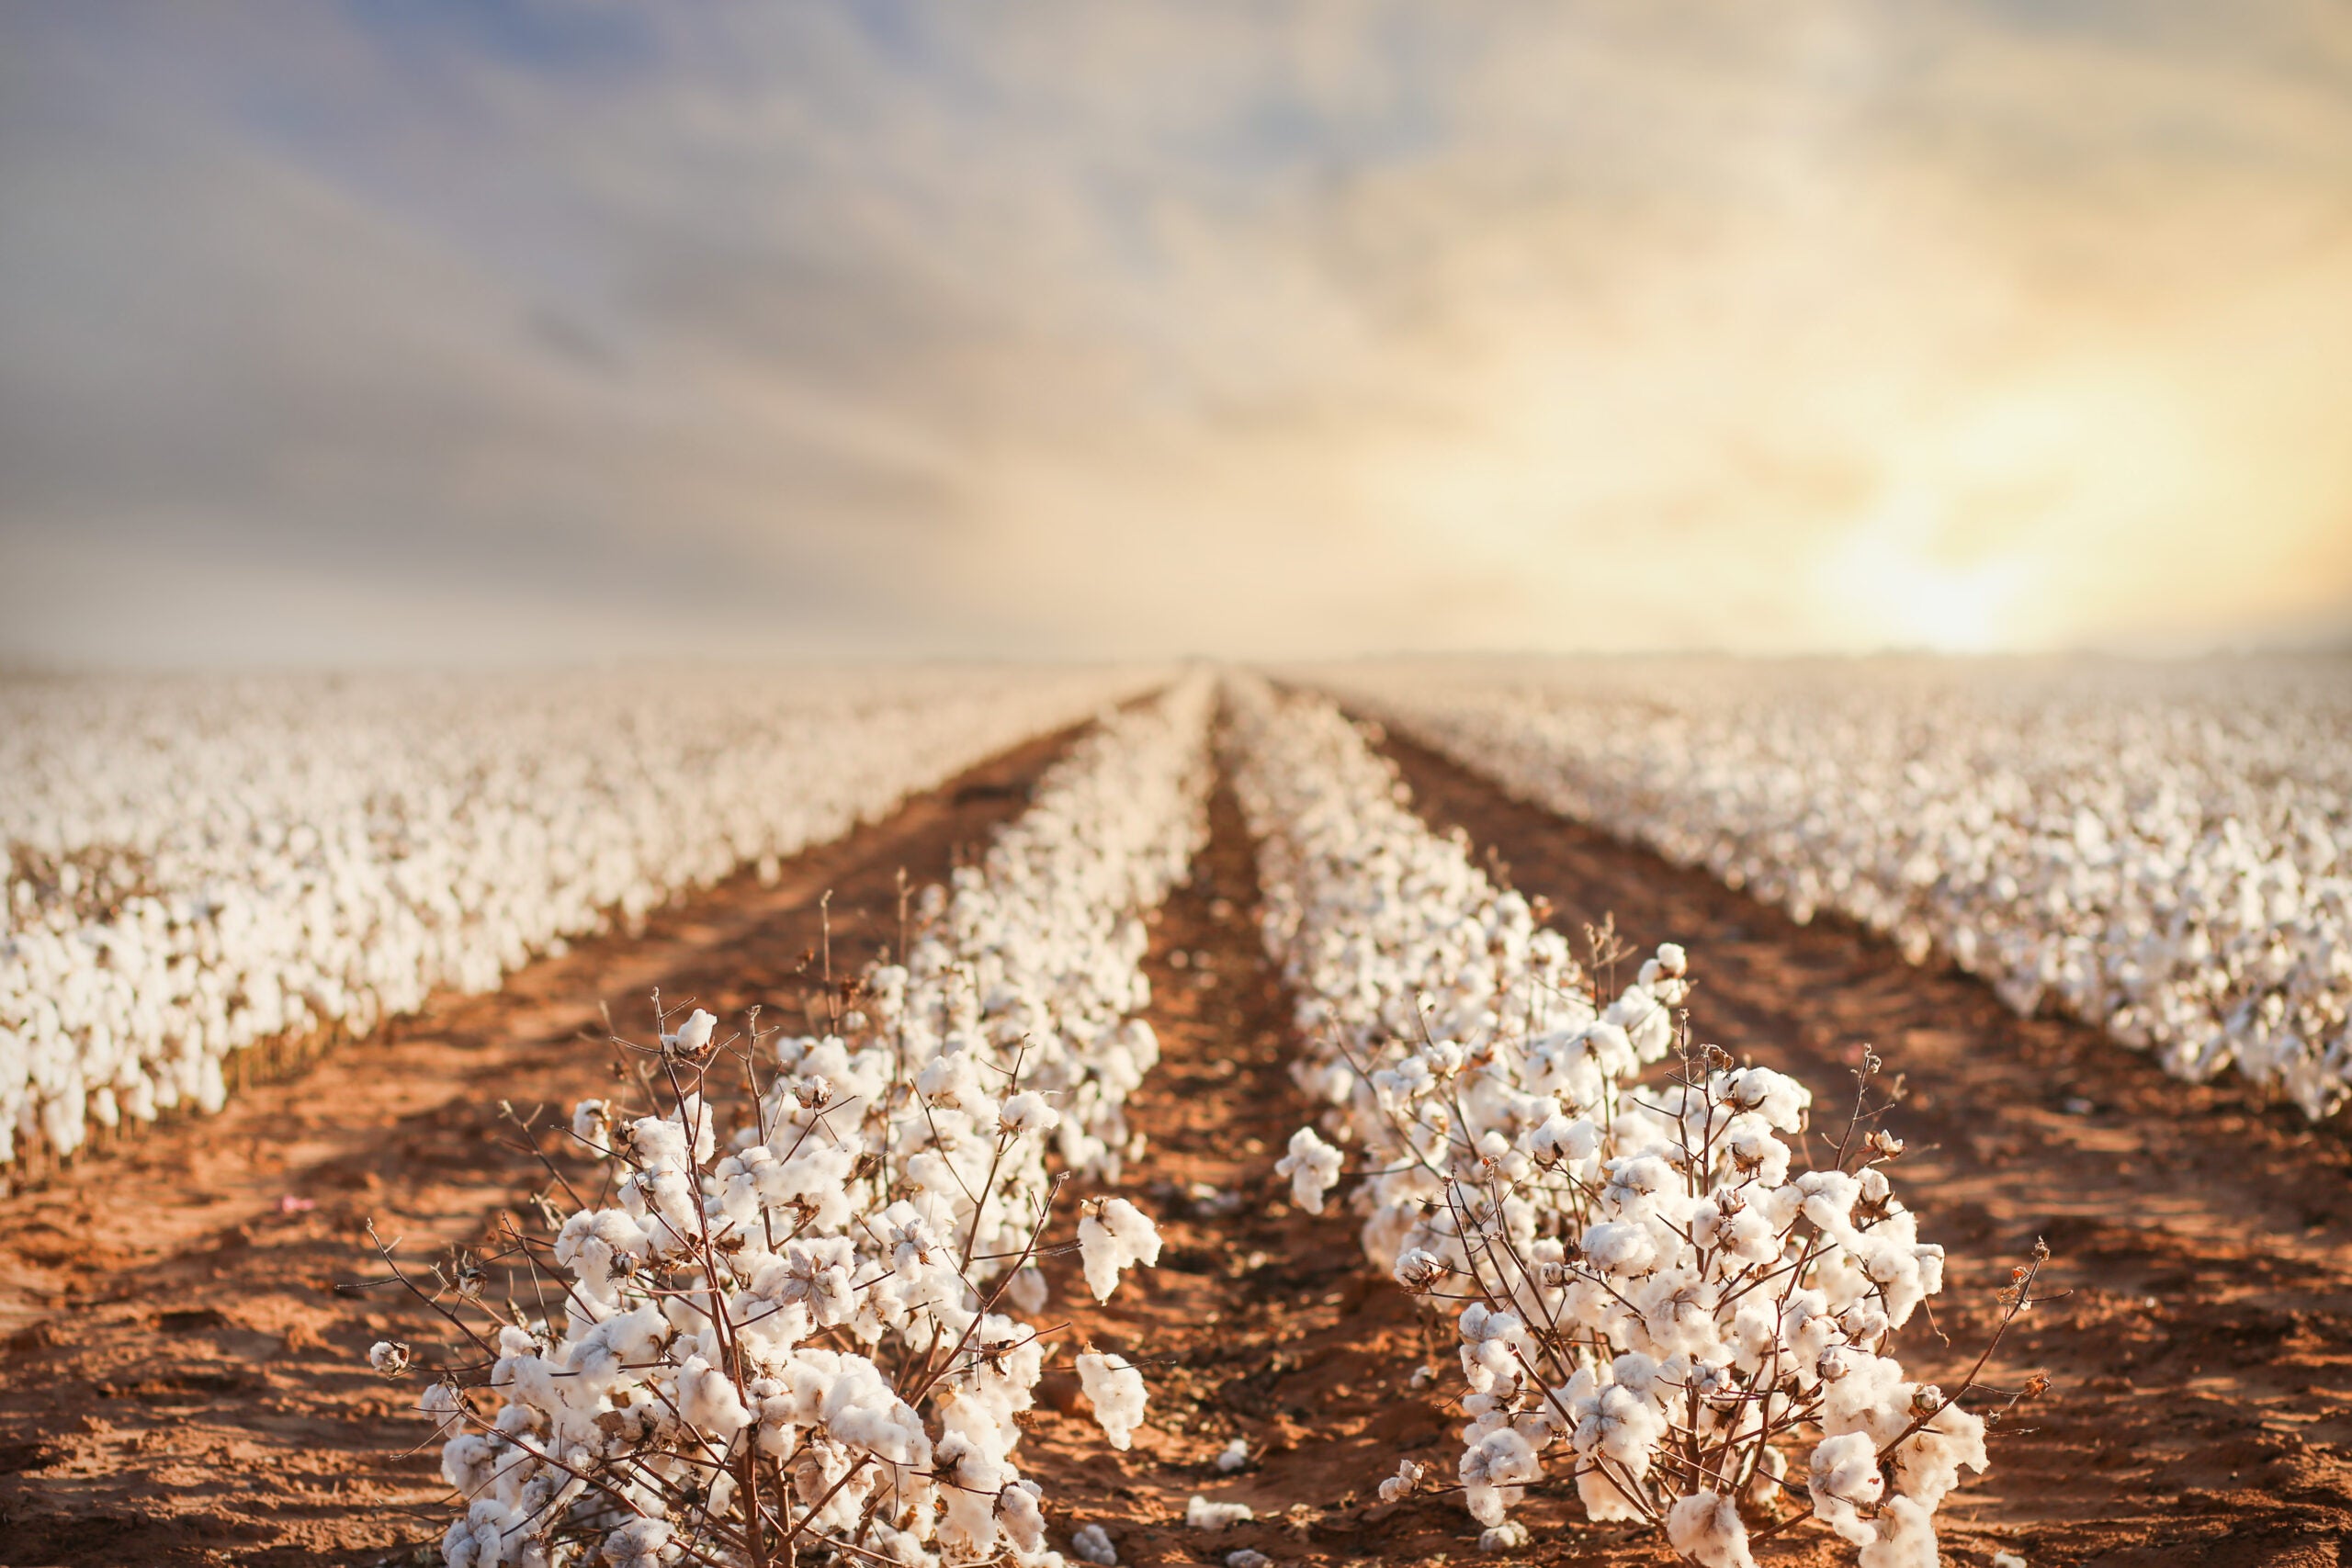 Turkmenistan cotton harvest 2021 used forced, child labour